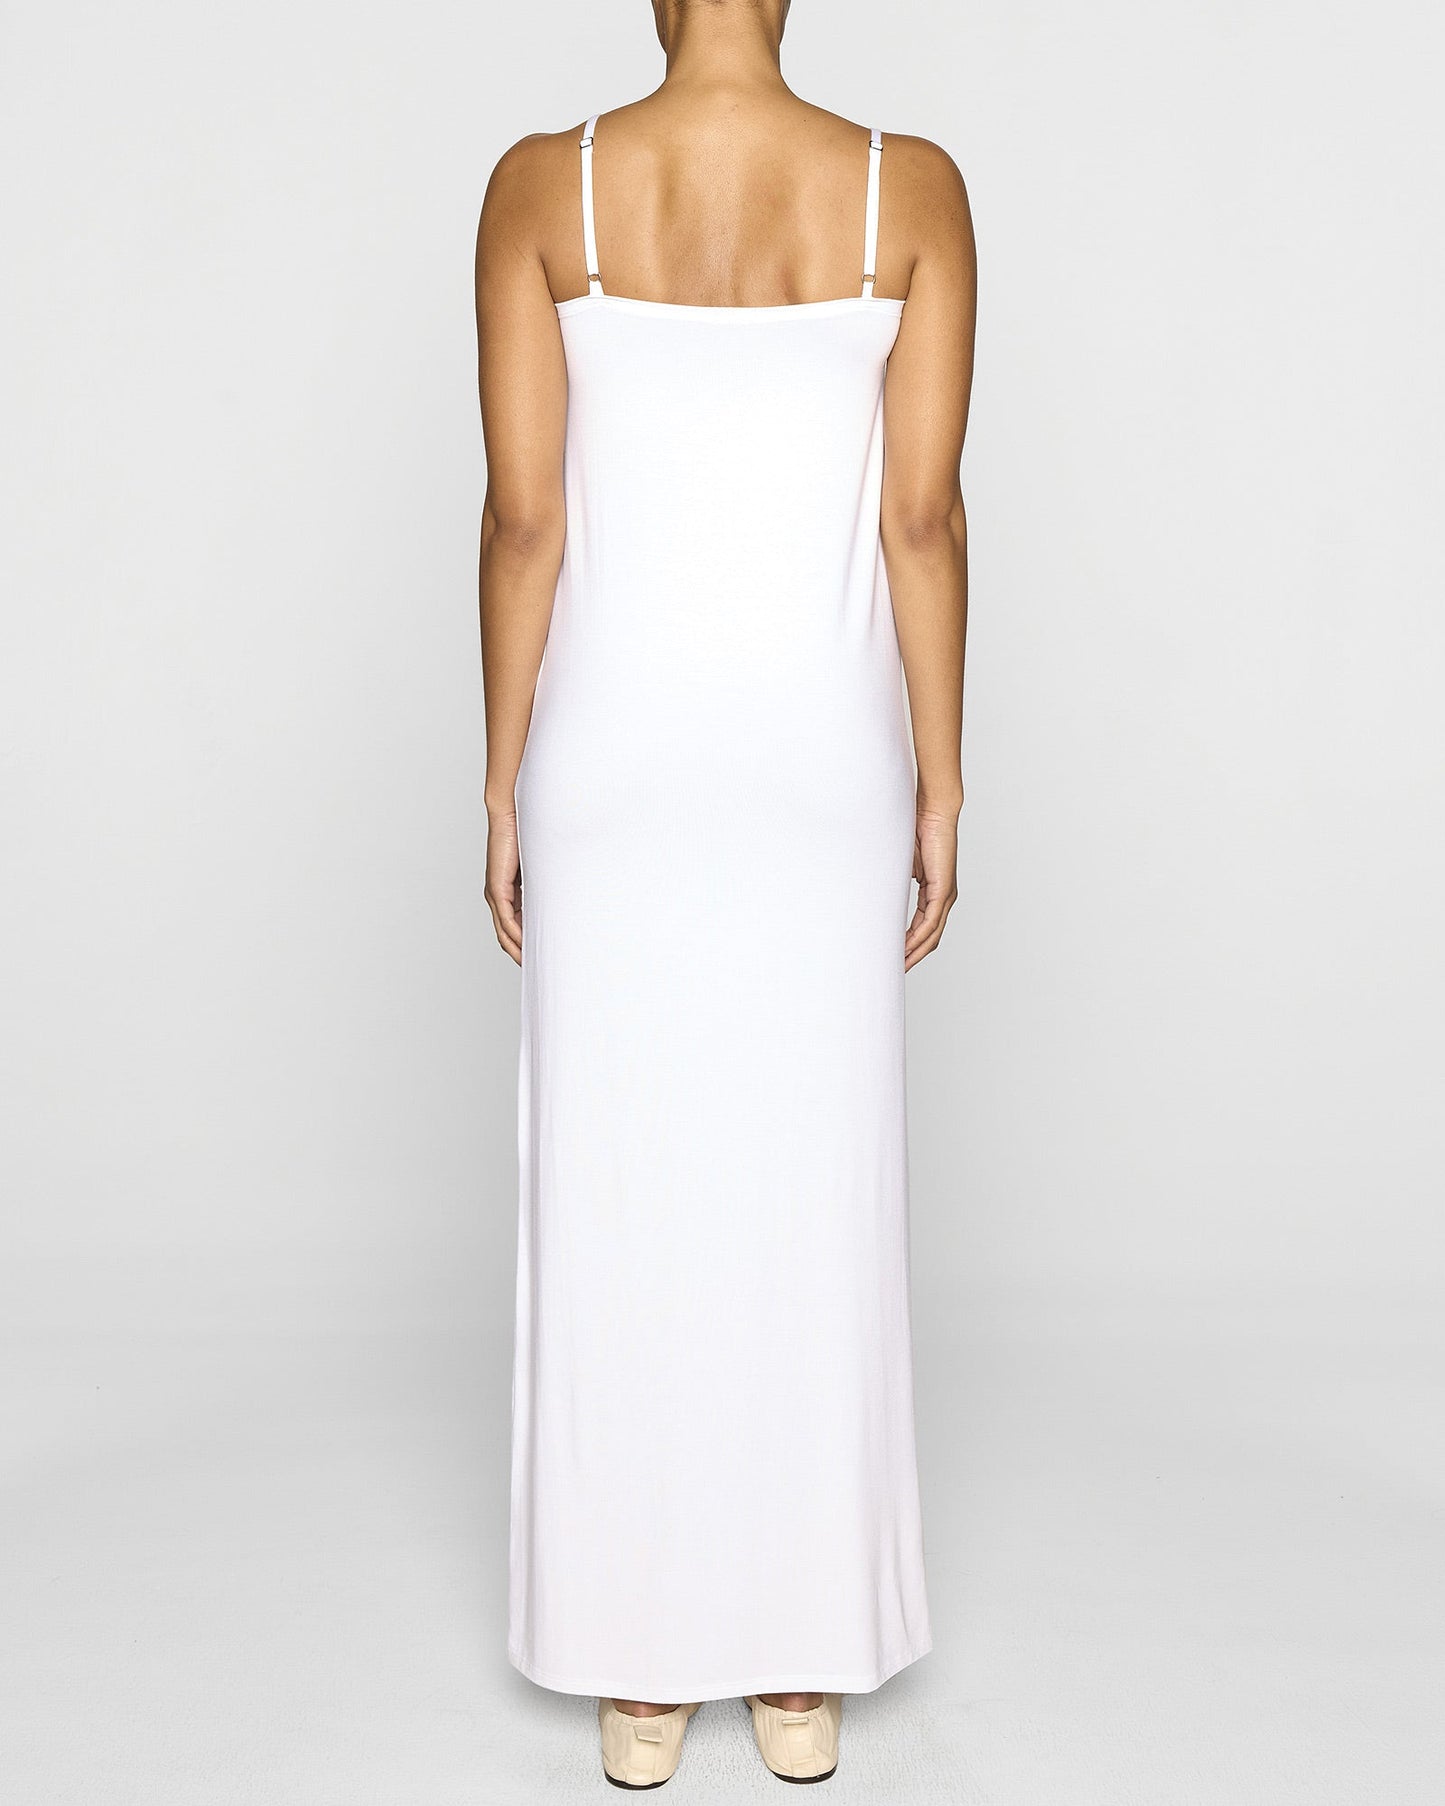 White | The Slip Dress Lite